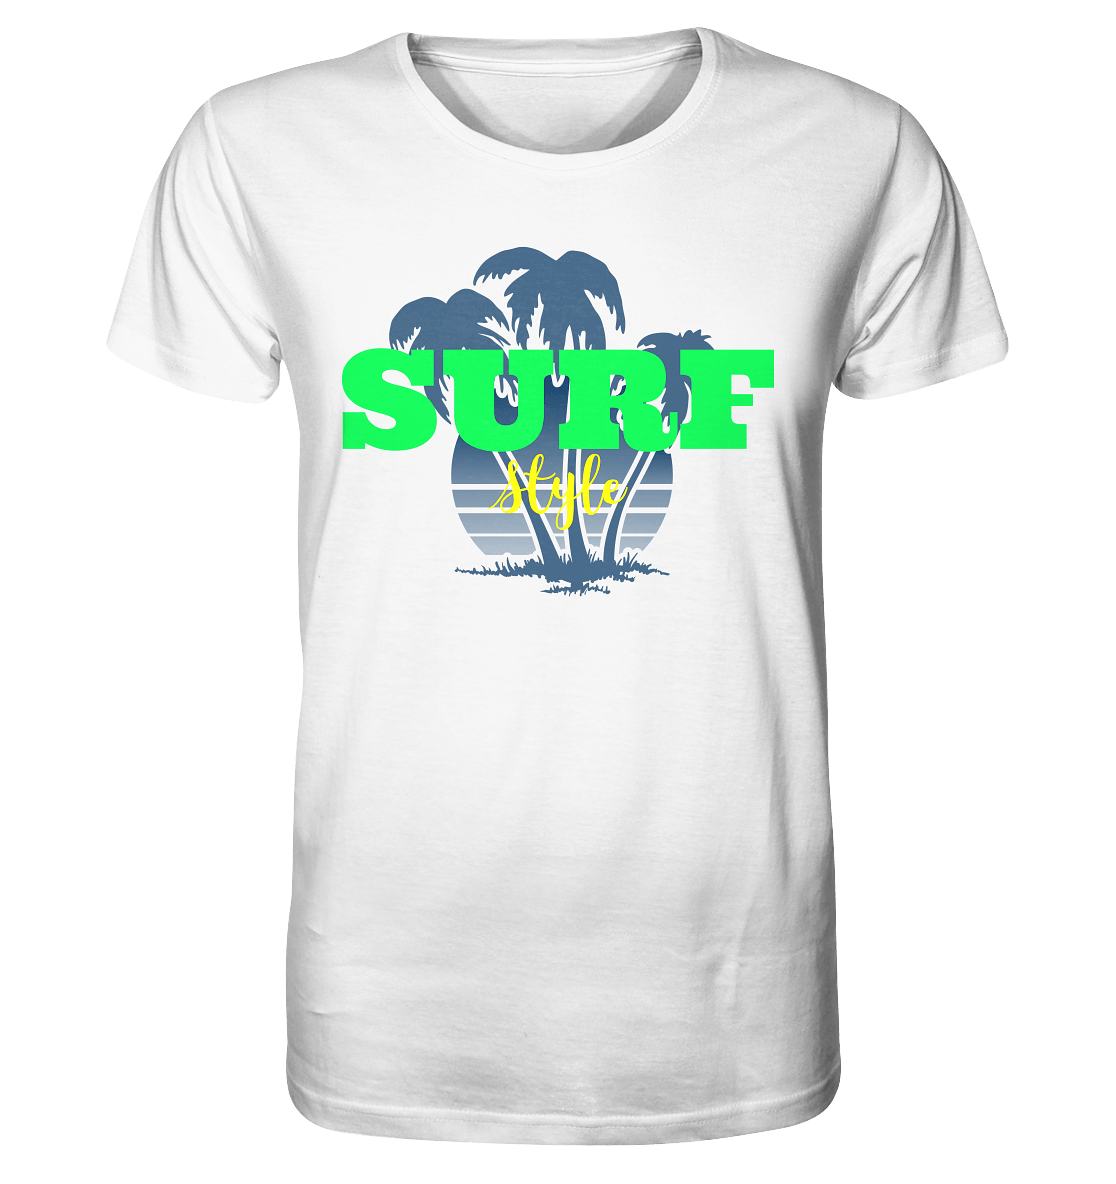 Herren T- Shirt mit stylischen sommerlichem Print und Beschriftung "Surf Style" kawaii